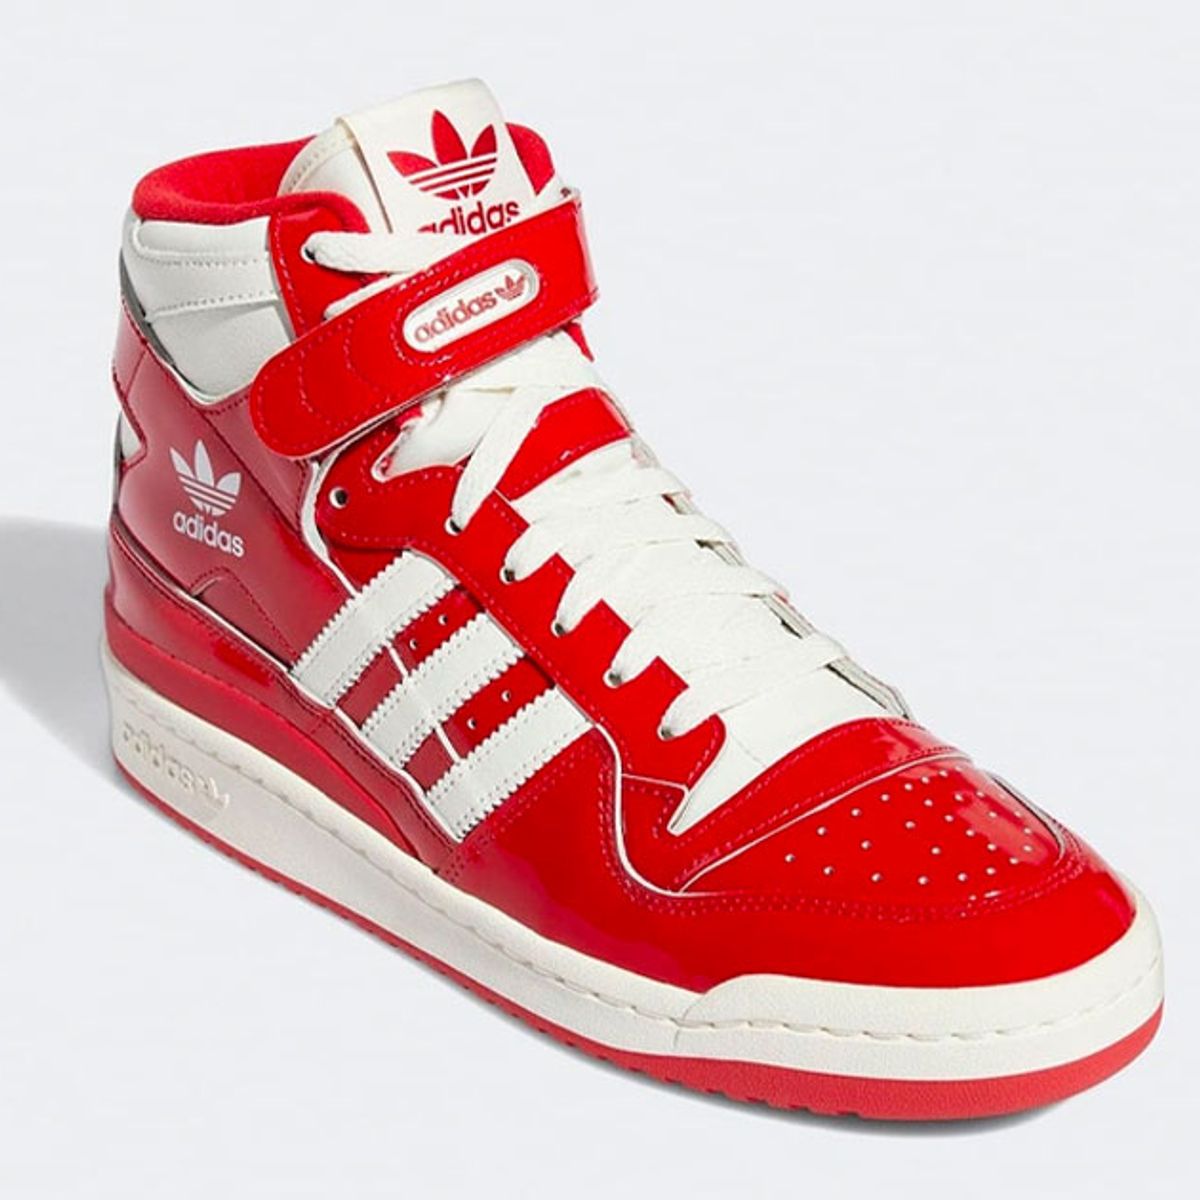 voor mij vocaal Naar de waarheid Official Images: adidas Forum Red Patent - Sneaker Freaker